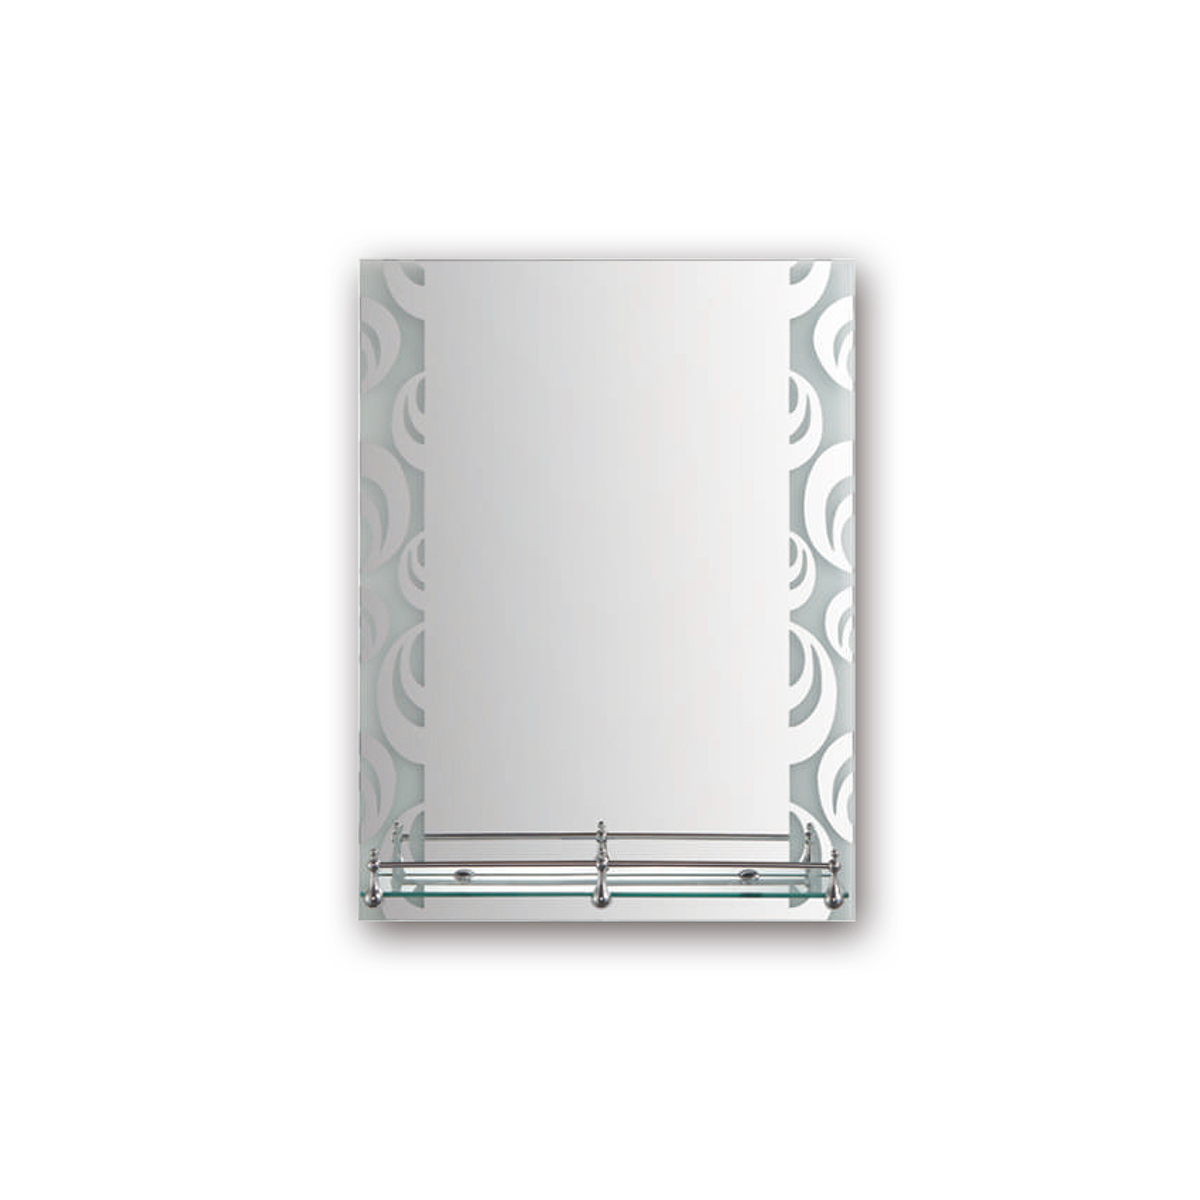 Зеркало прямоугольное Frap F695, с полкой, 60 x 45 см зеркало фигурное frap f622 45 x 60 см матовое